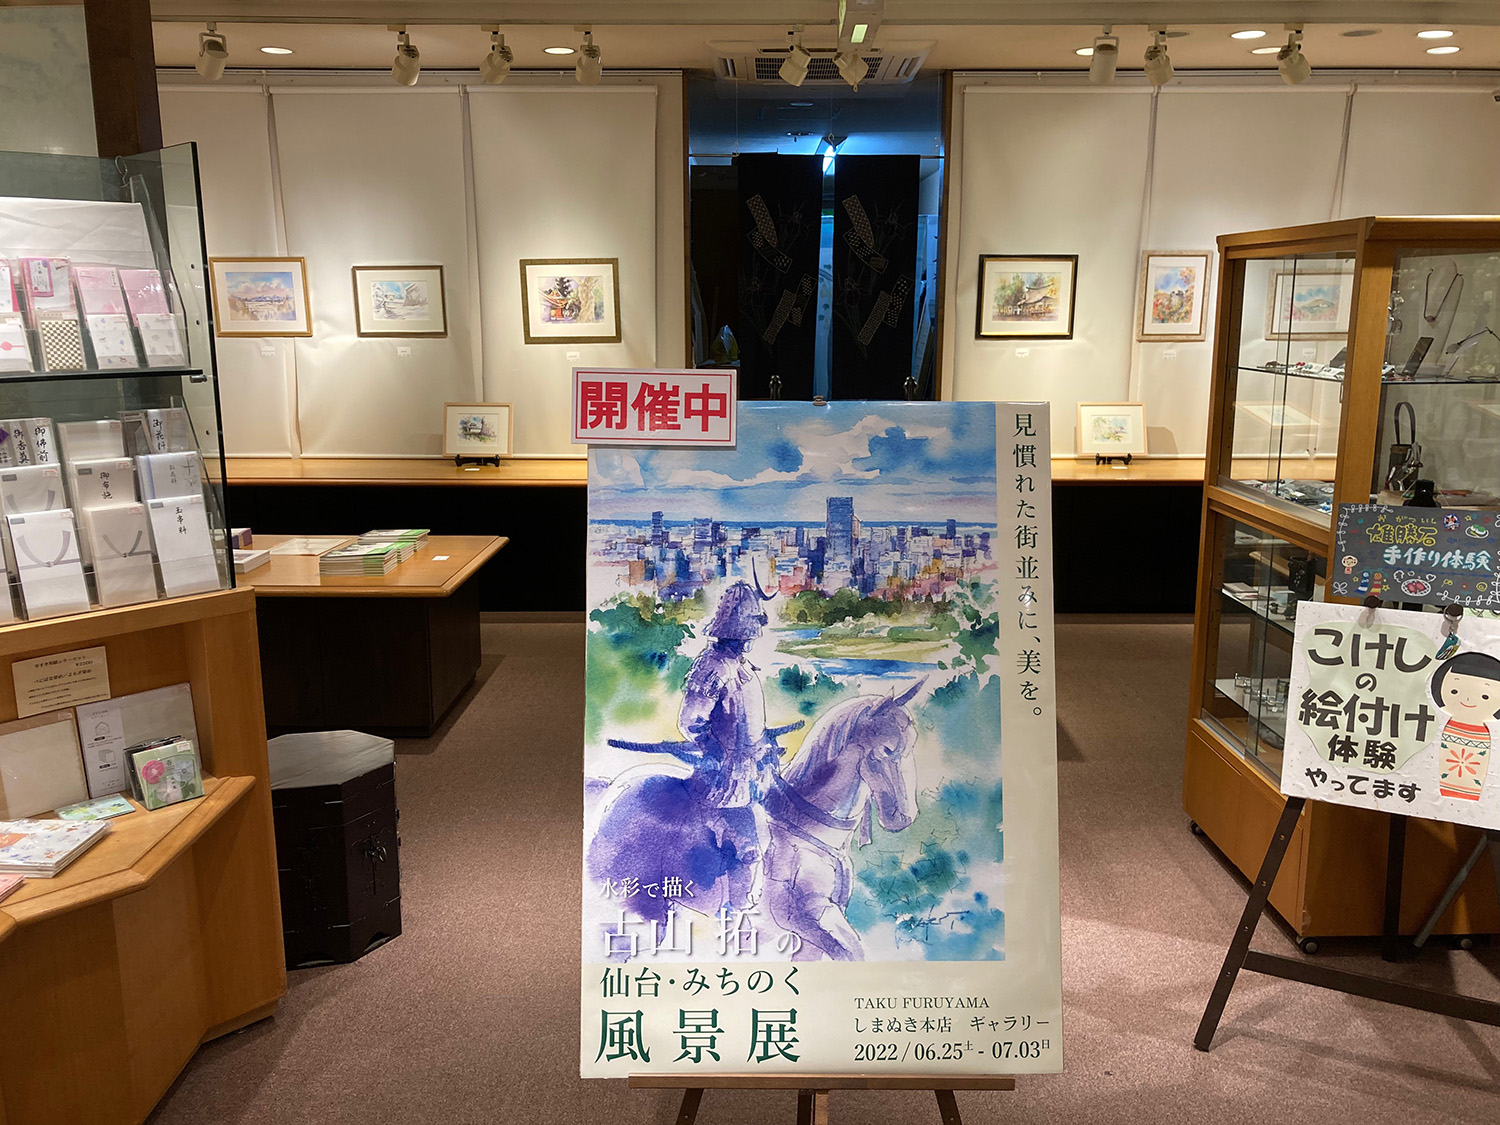 『水彩で描く古山拓の仙台・みちのく風景展』こけしのしまぬき本店